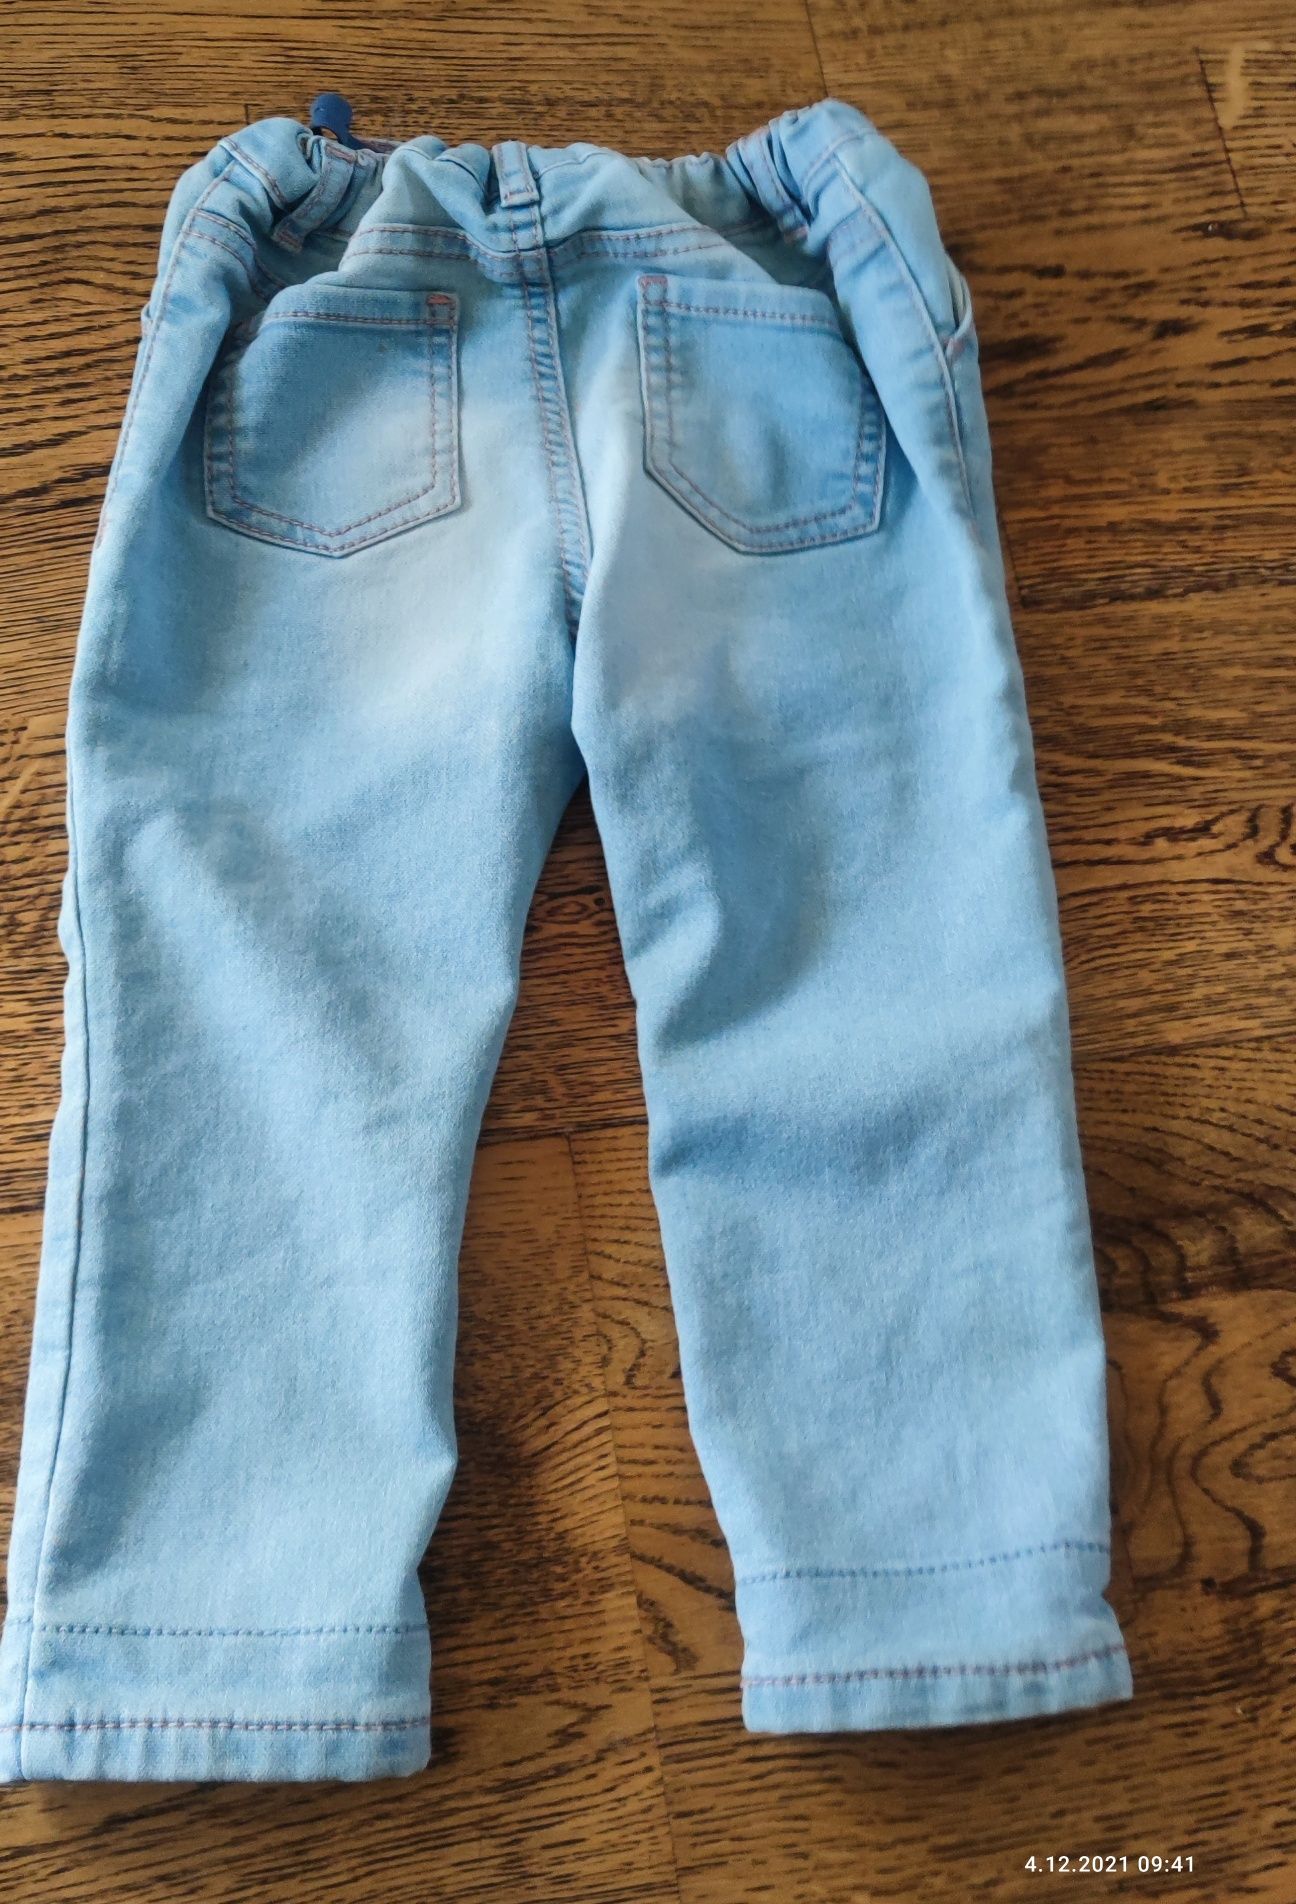 Spodnie jeans dziewczęce 86 jak nowe